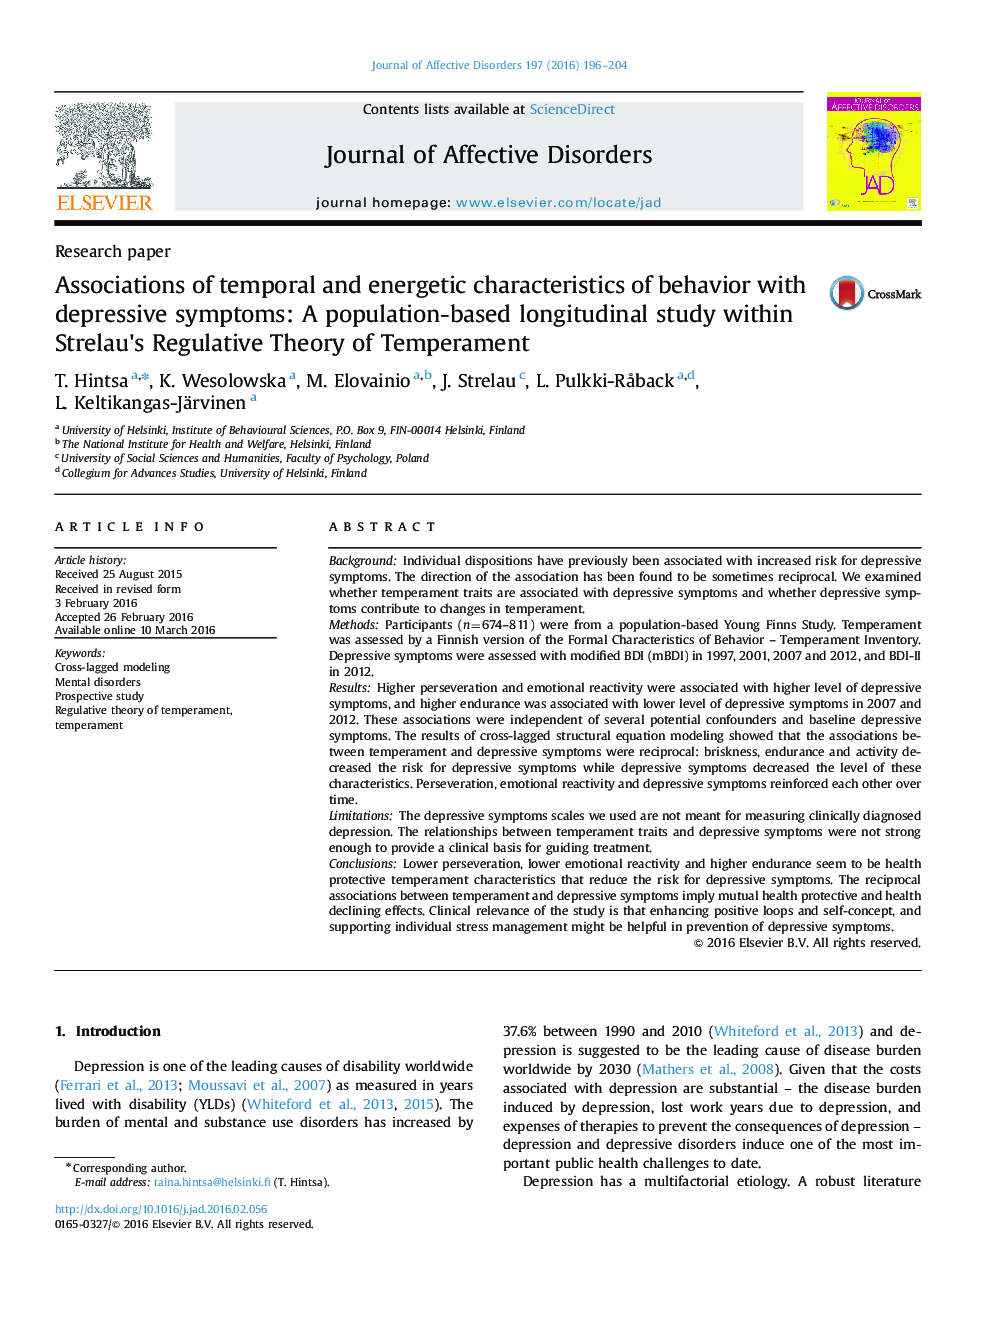 انجمن های ویژگی های زمانی و پر انرژی رفتار با علائم افسردگی: مطالعه طولی مبتنی بر جمعیت در نظریه رگولاتور استرولاو 